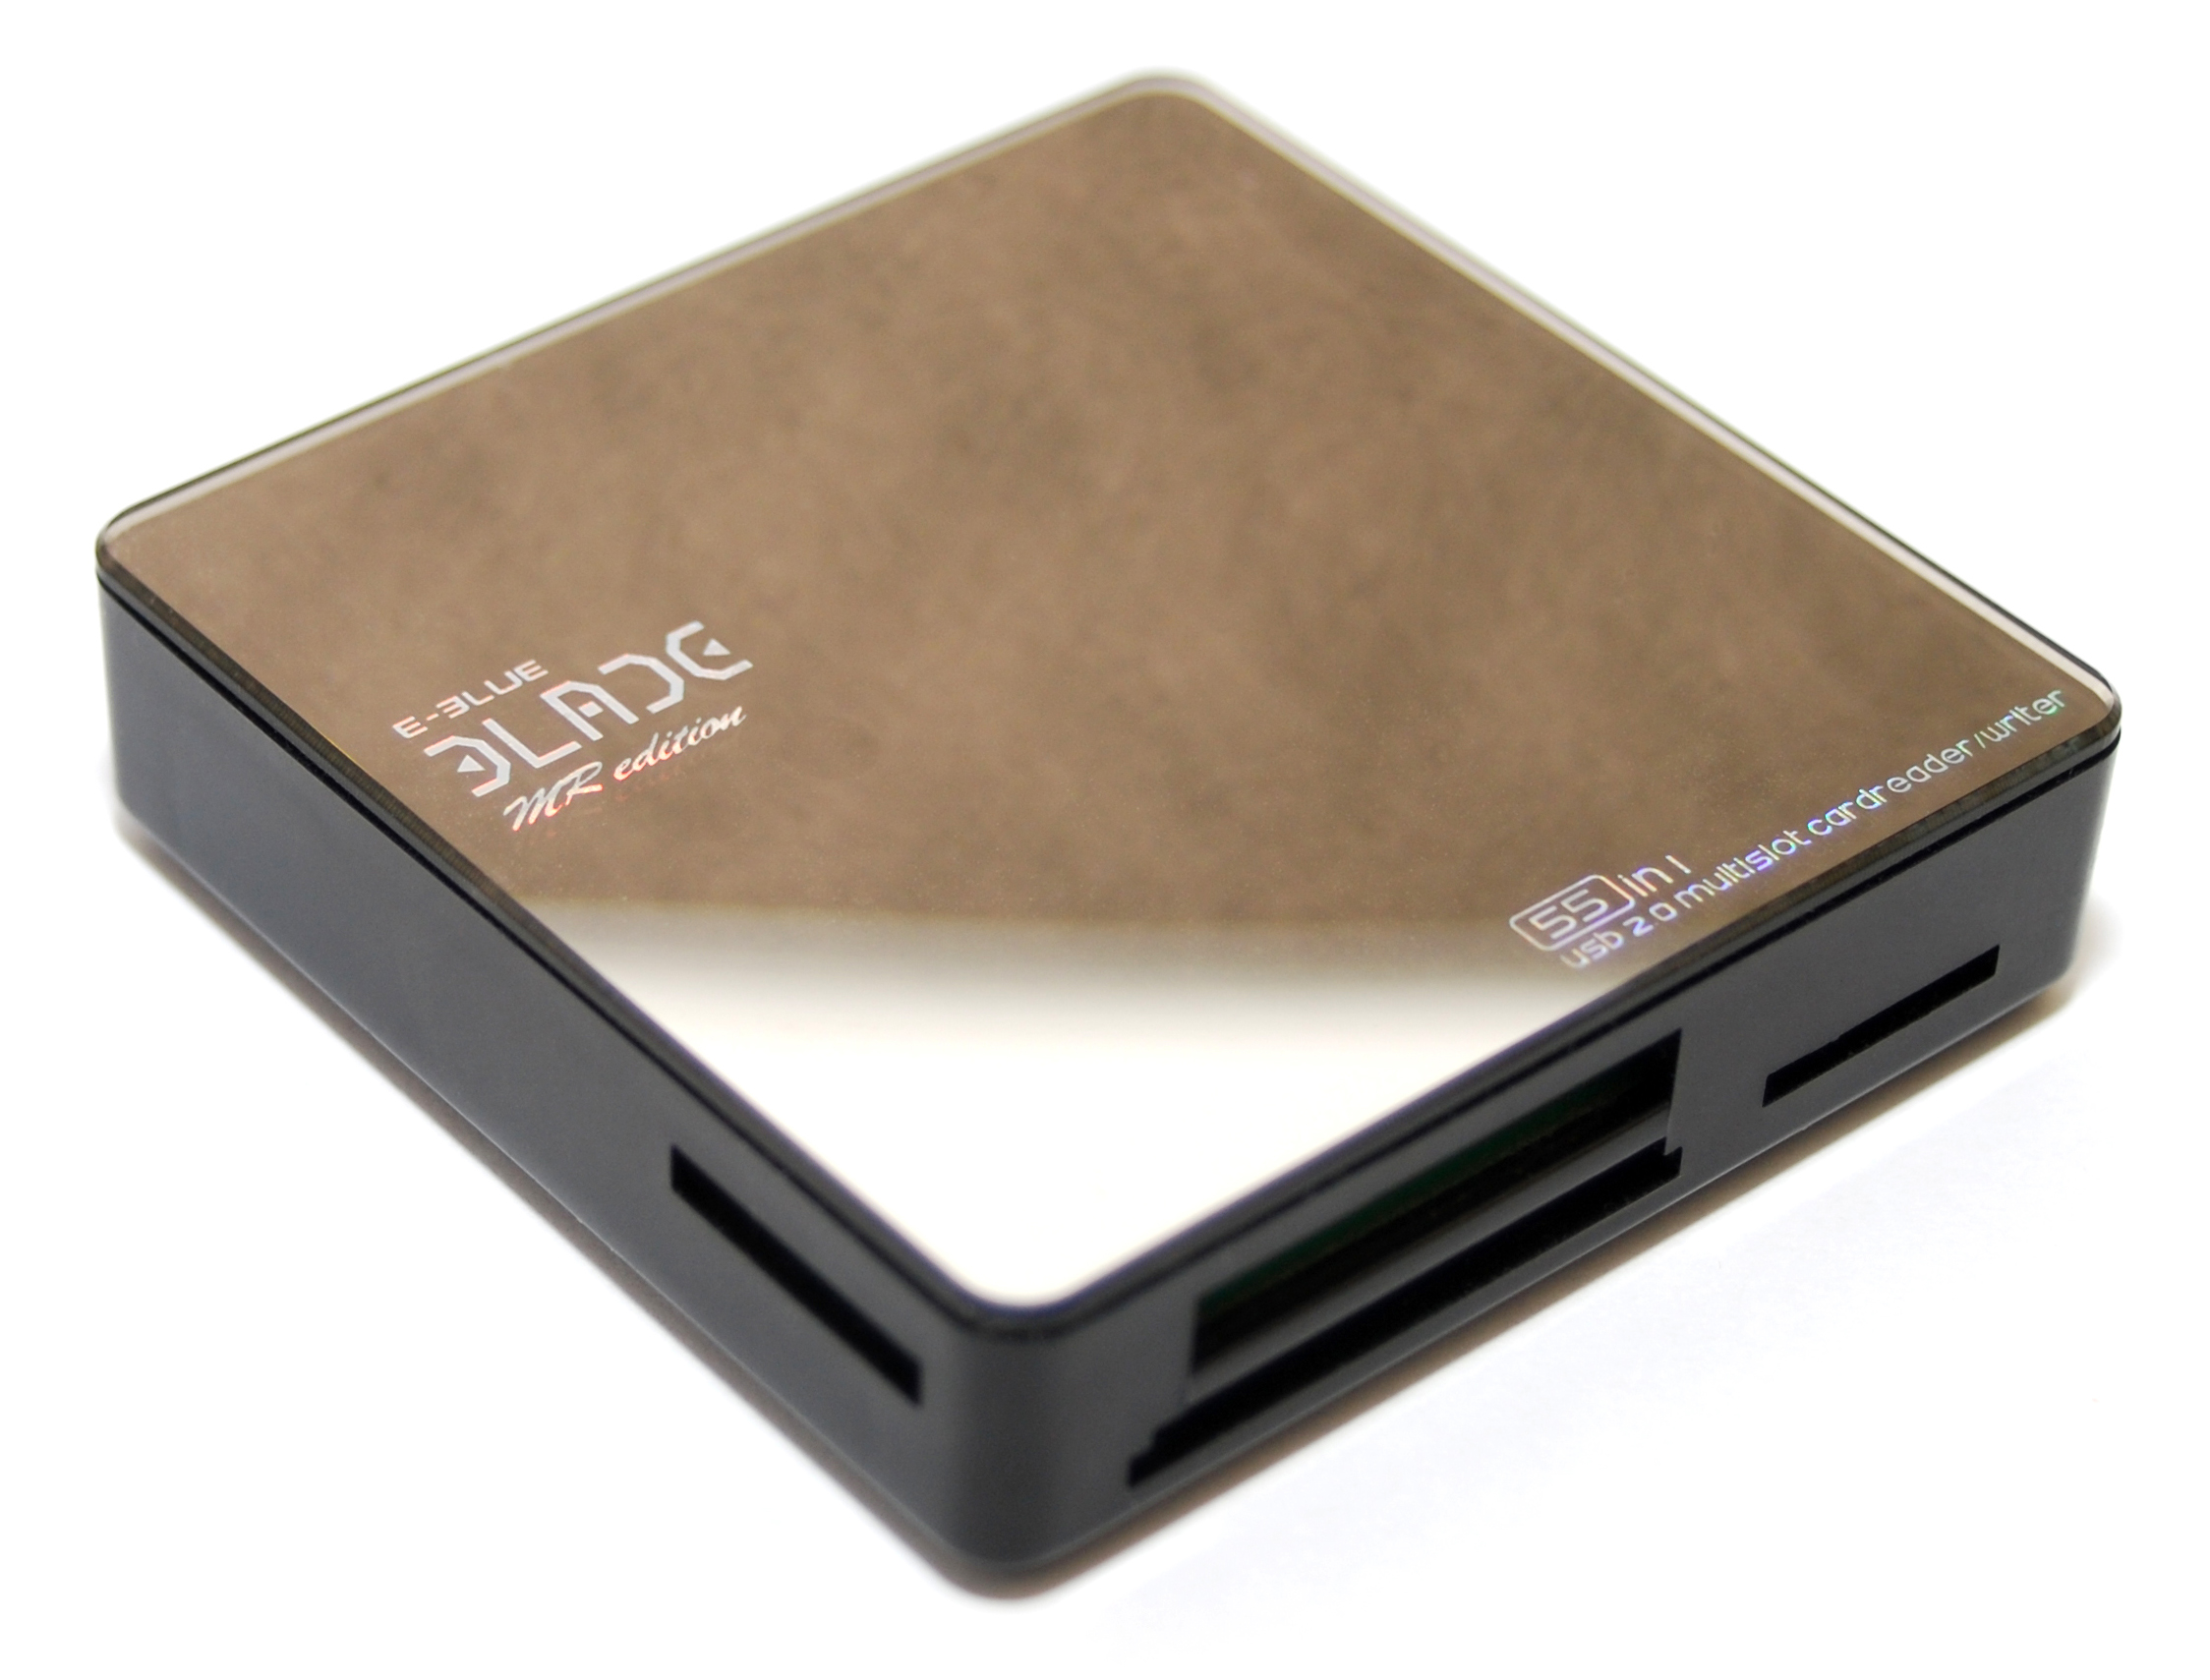 Blade USB 2.0 Multi Card Reader